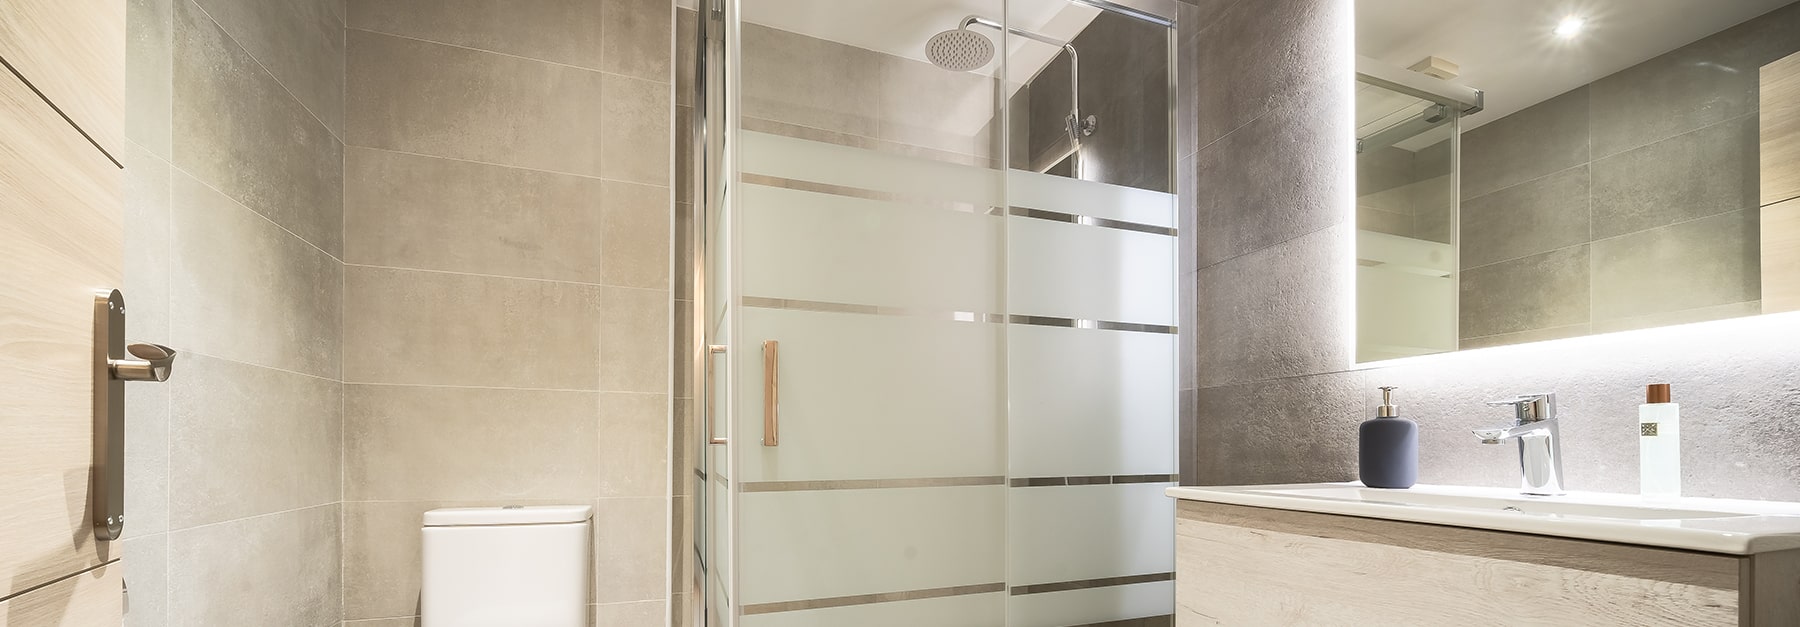 residential glass shower door vancouver